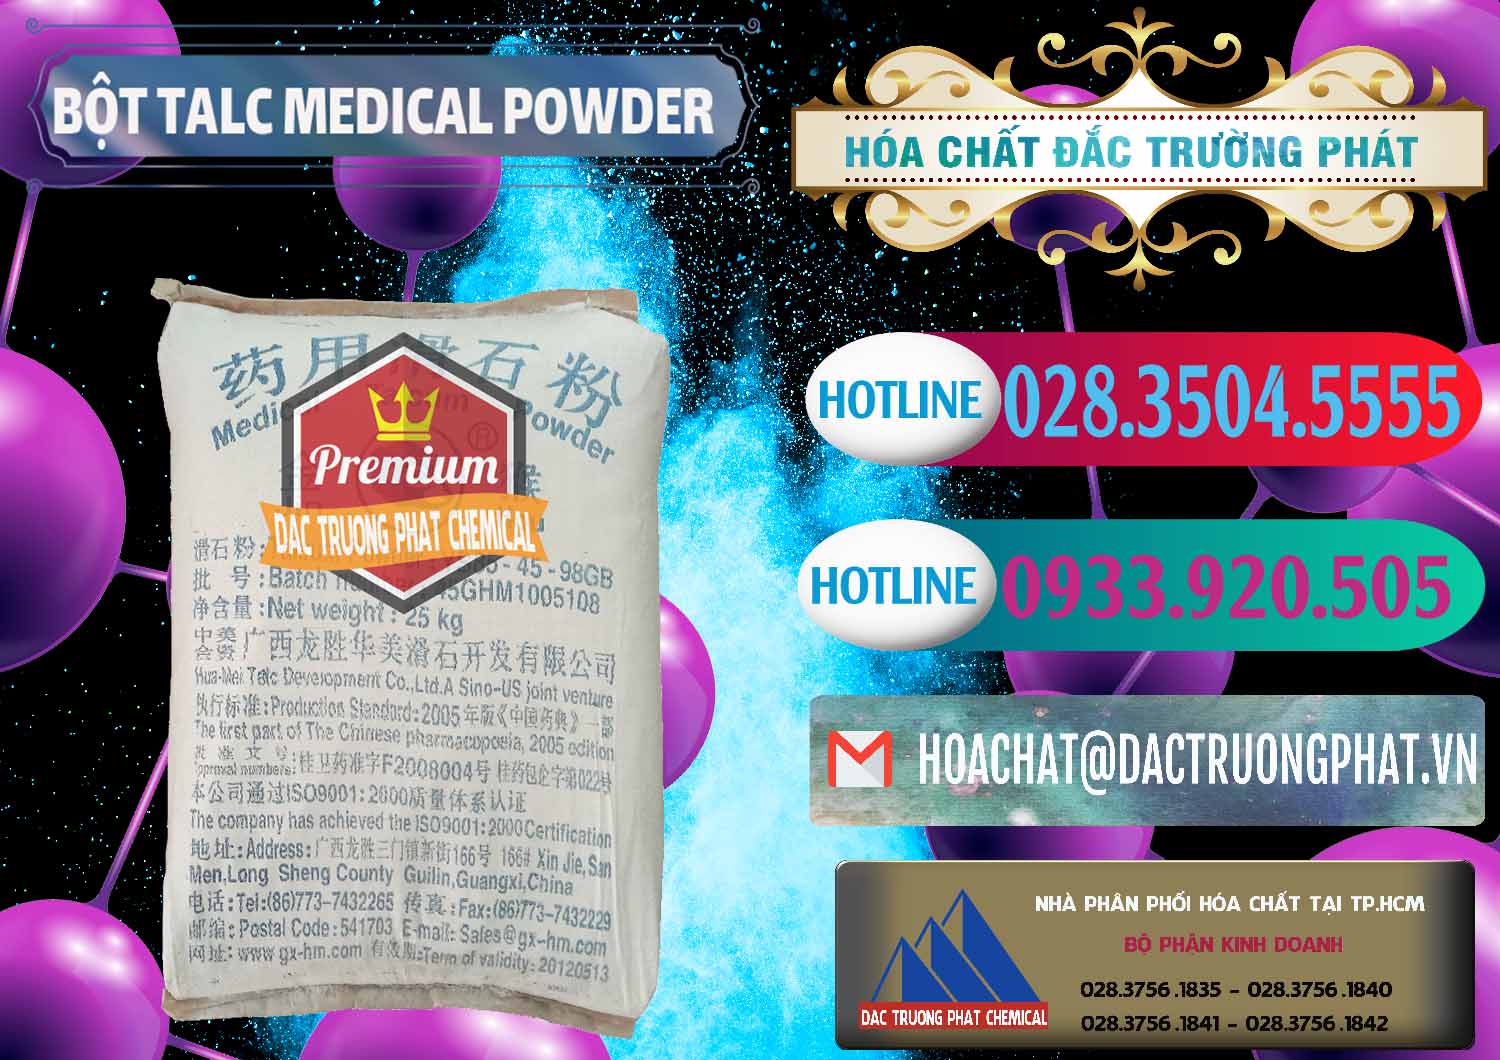 Nơi bán và cung ứng Bột Talc Medical Powder Trung Quốc China - 0036 - Cty cung ứng - phân phối hóa chất tại TP.HCM - truongphat.vn